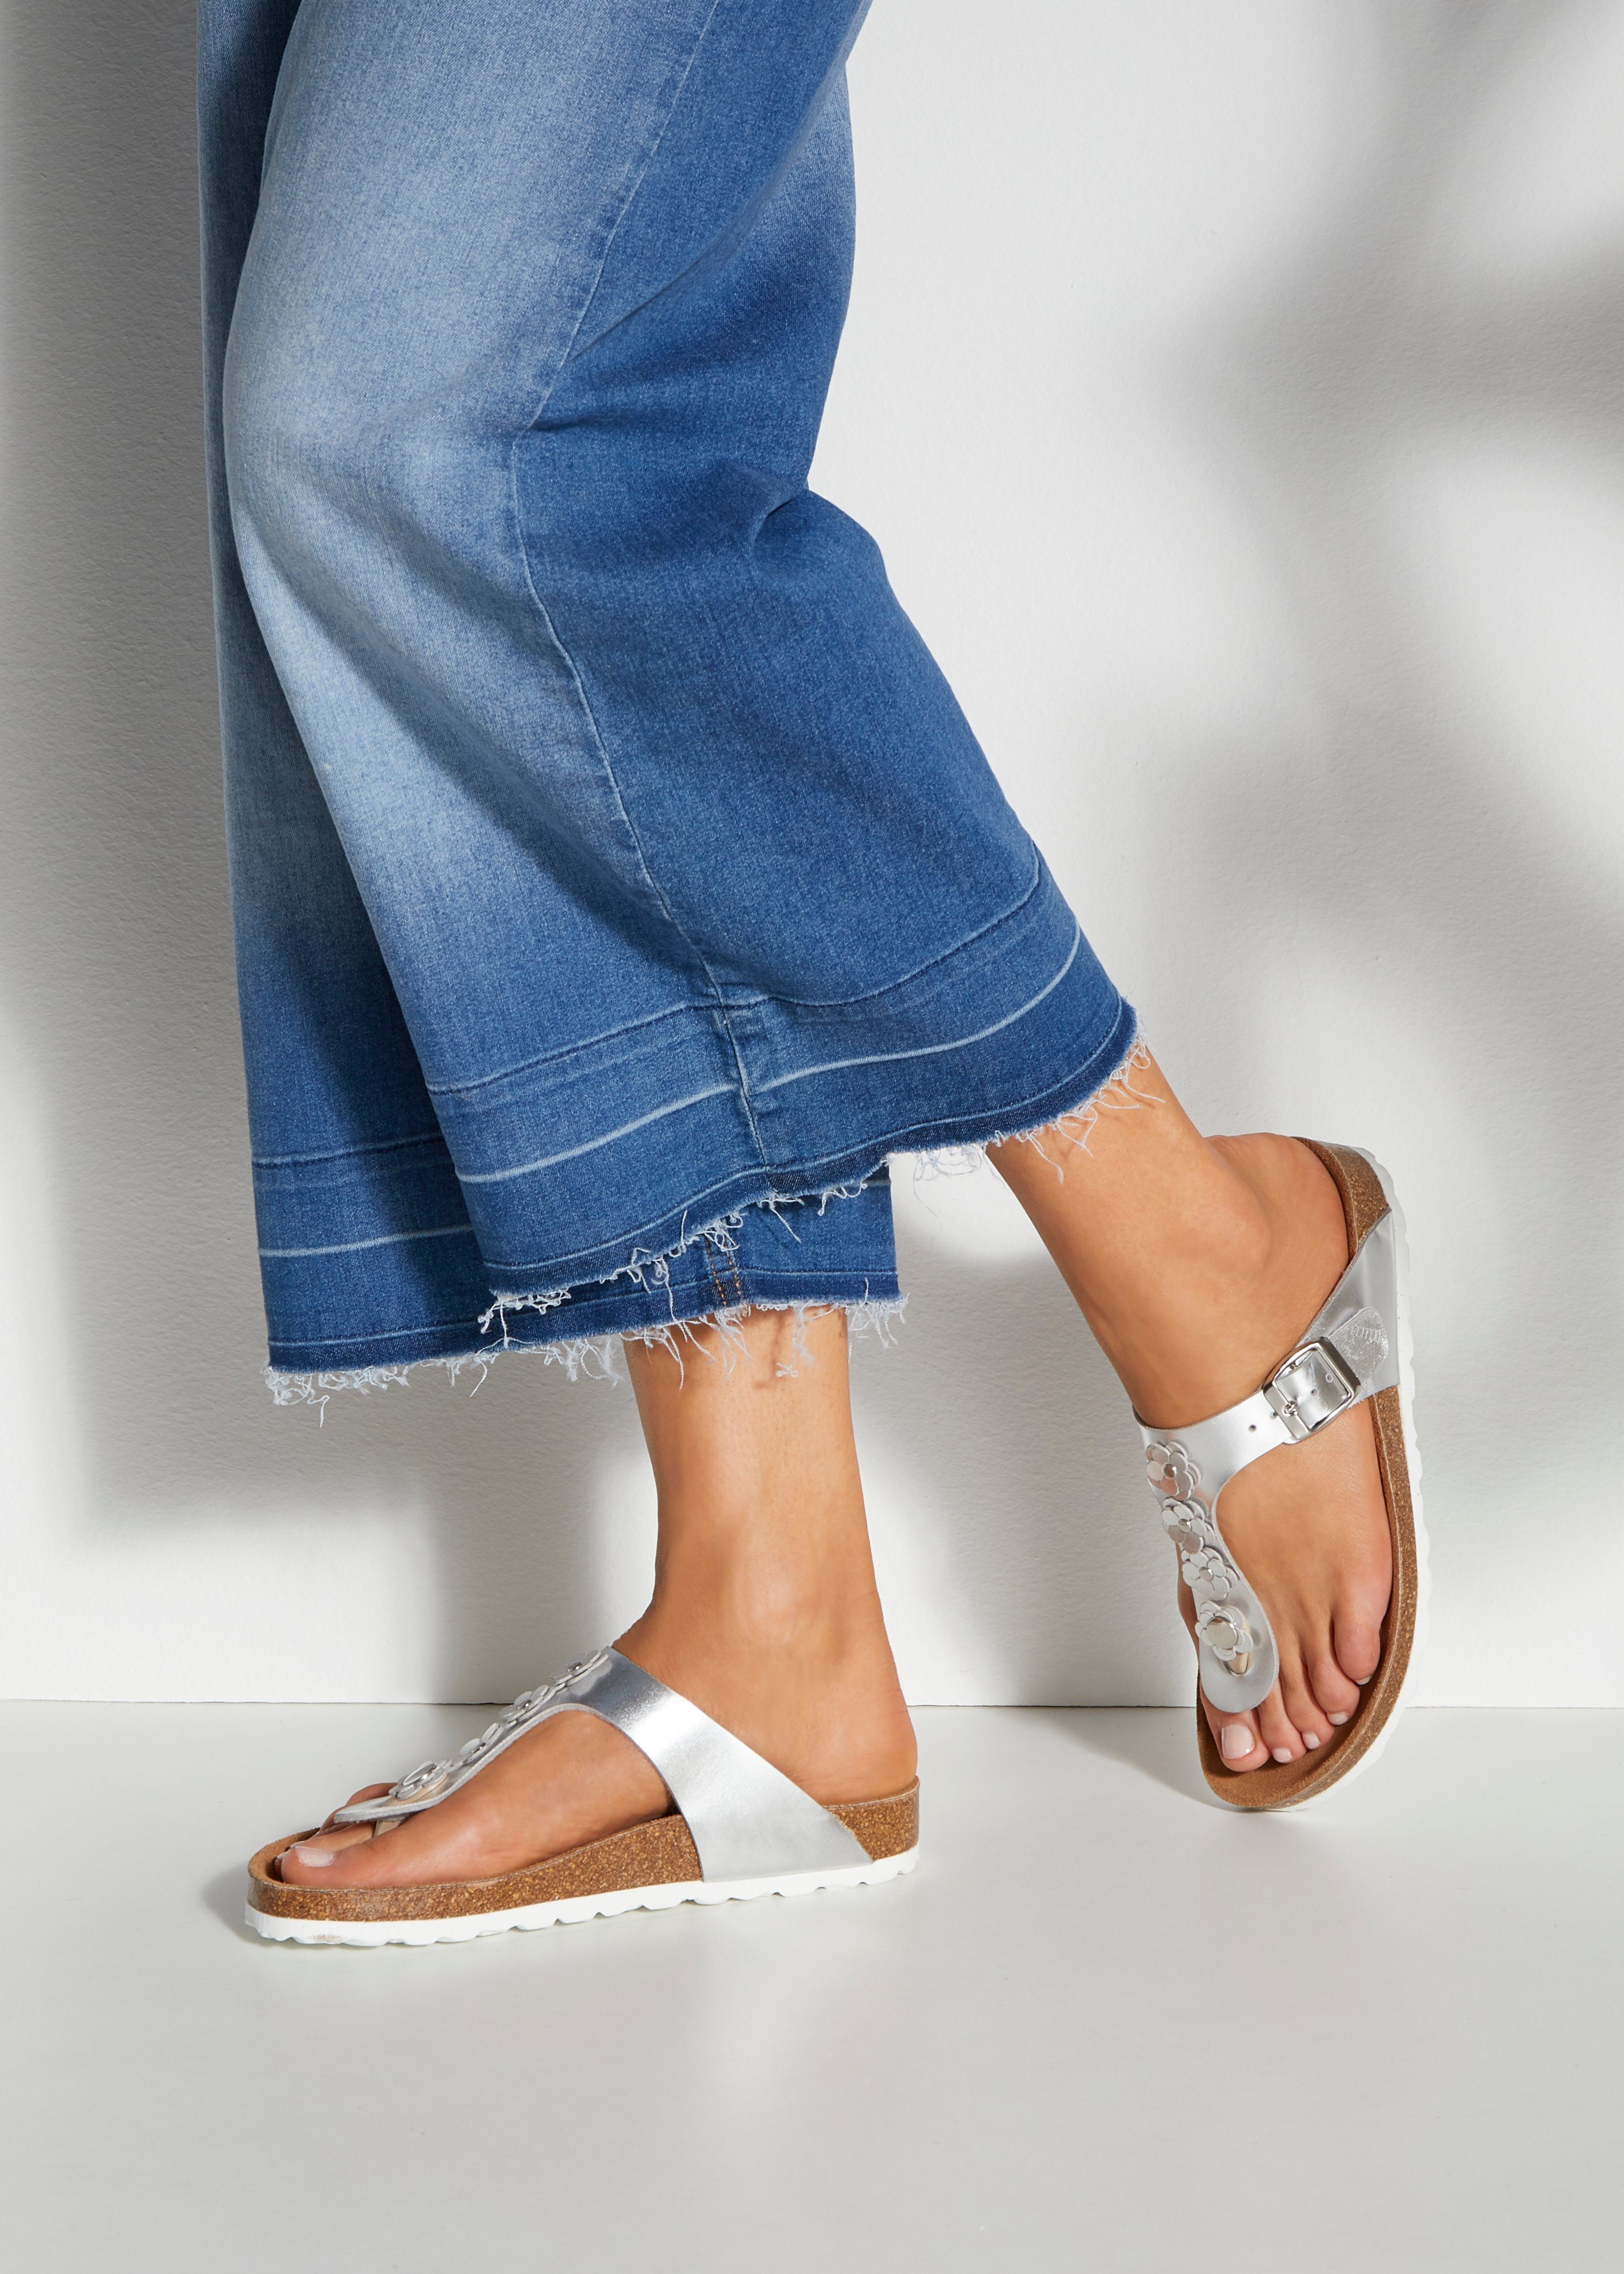 Applikation Zehentrenner Sandale, LASCANA und weiß-silberfarben Korkfußbett mit Pantolette modischer